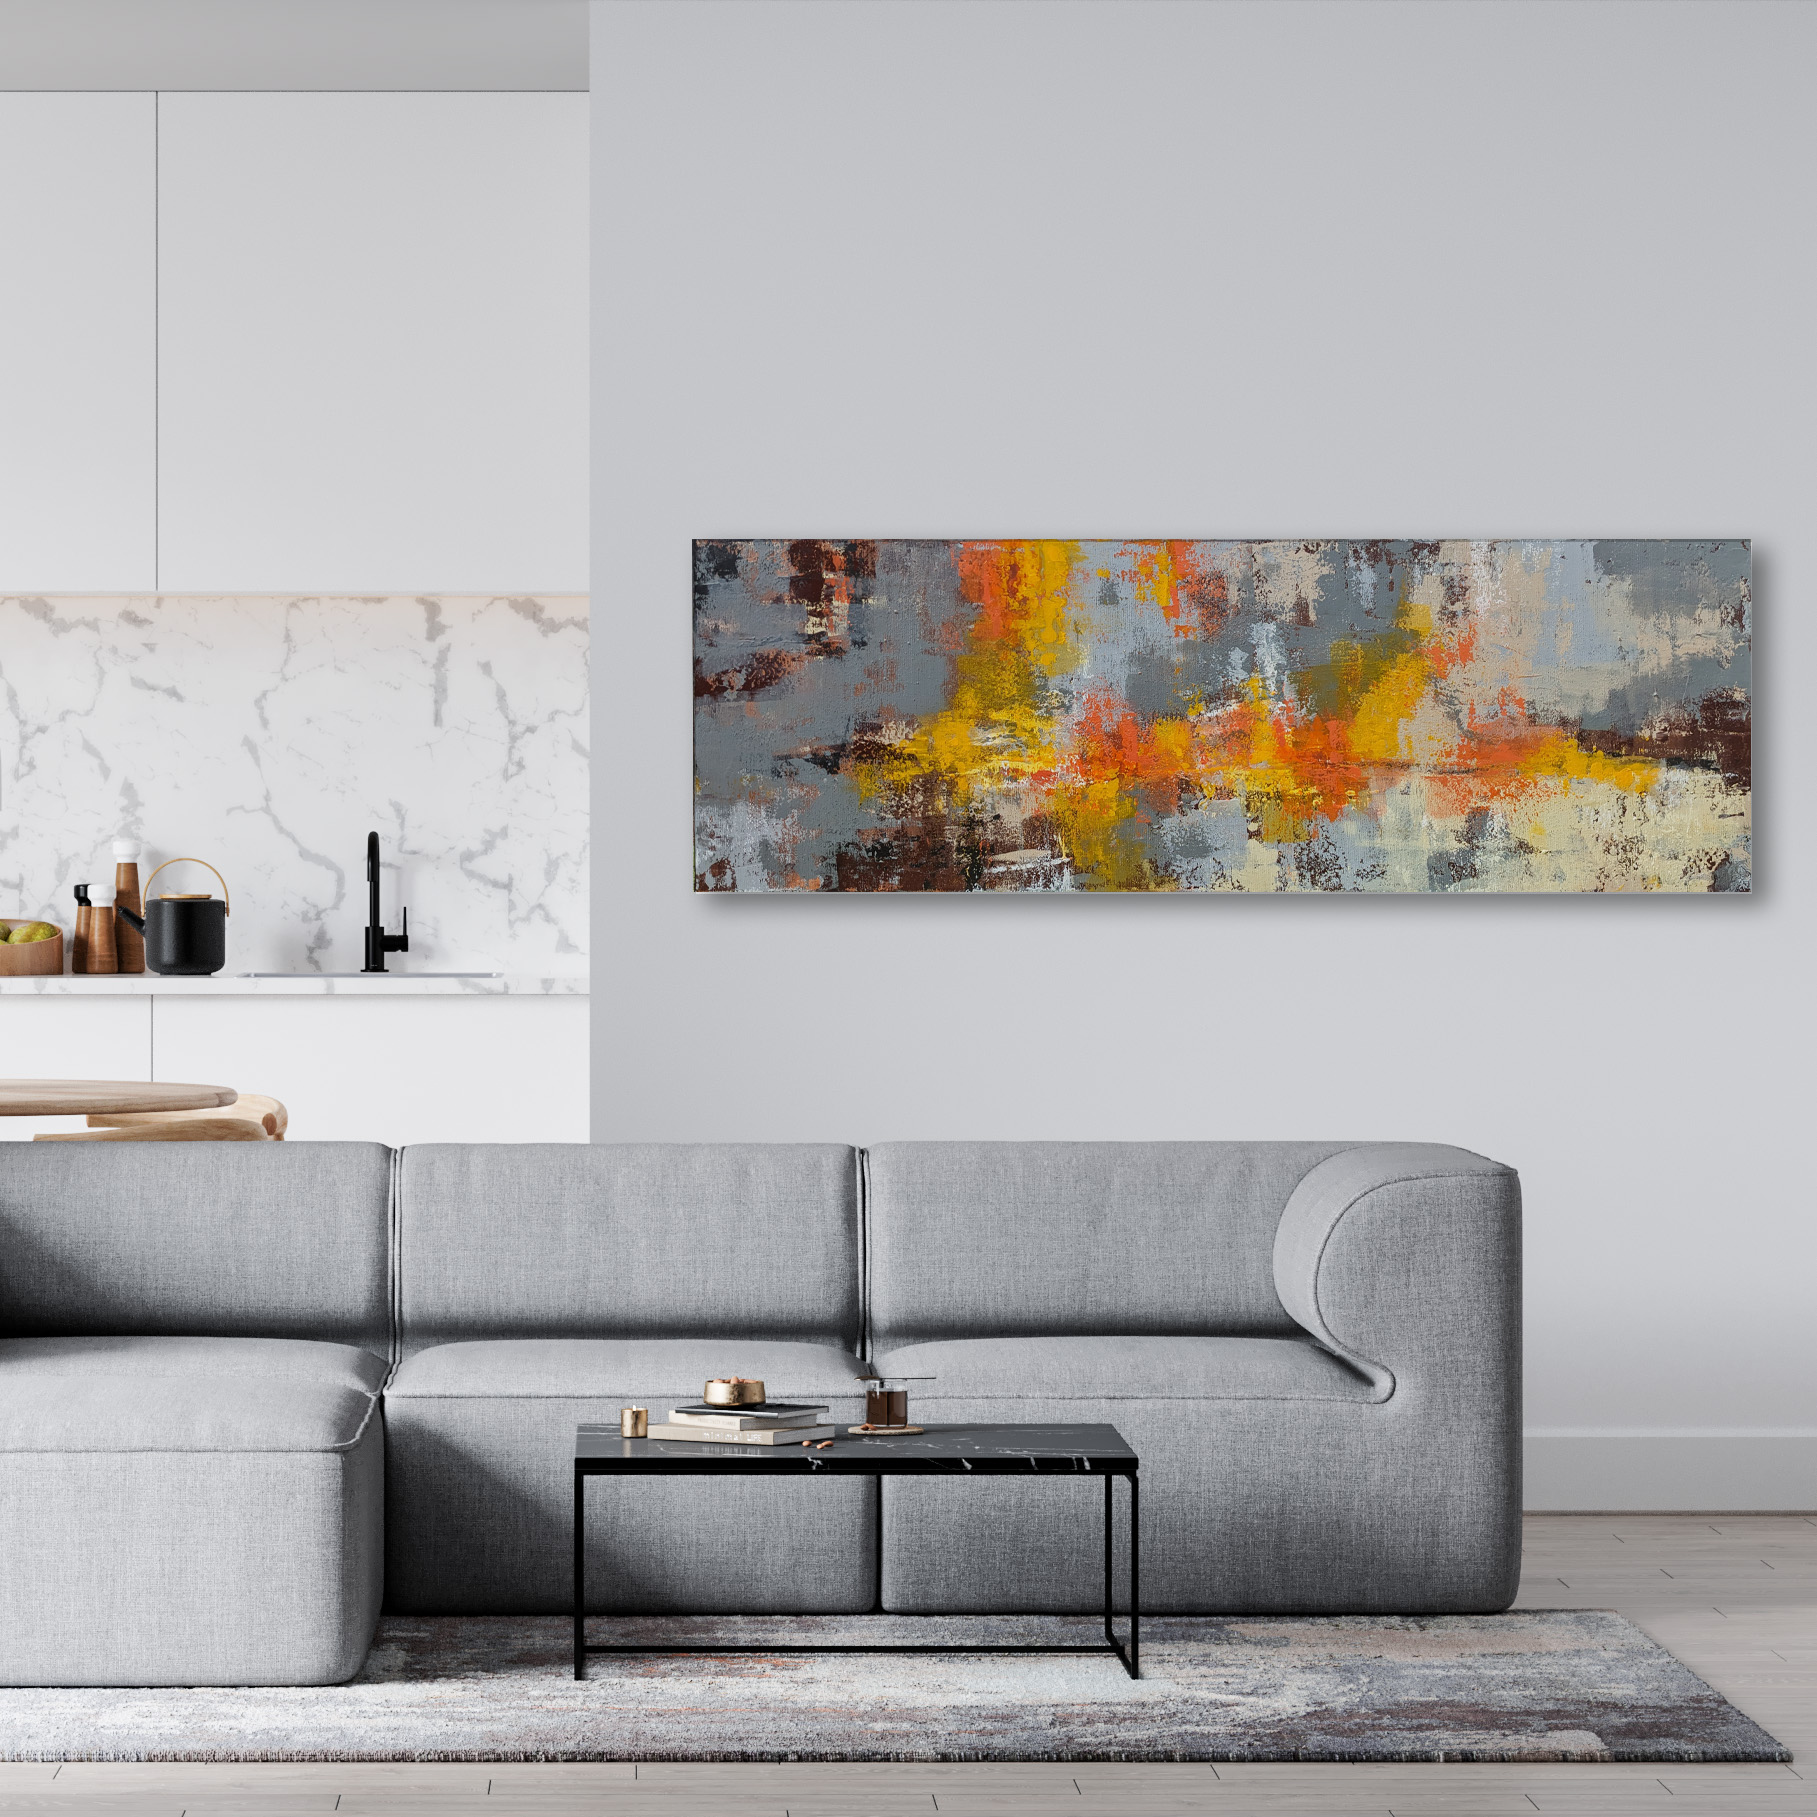 Horizon - Grand tableau abstrait décoration murale tendance salon moderne